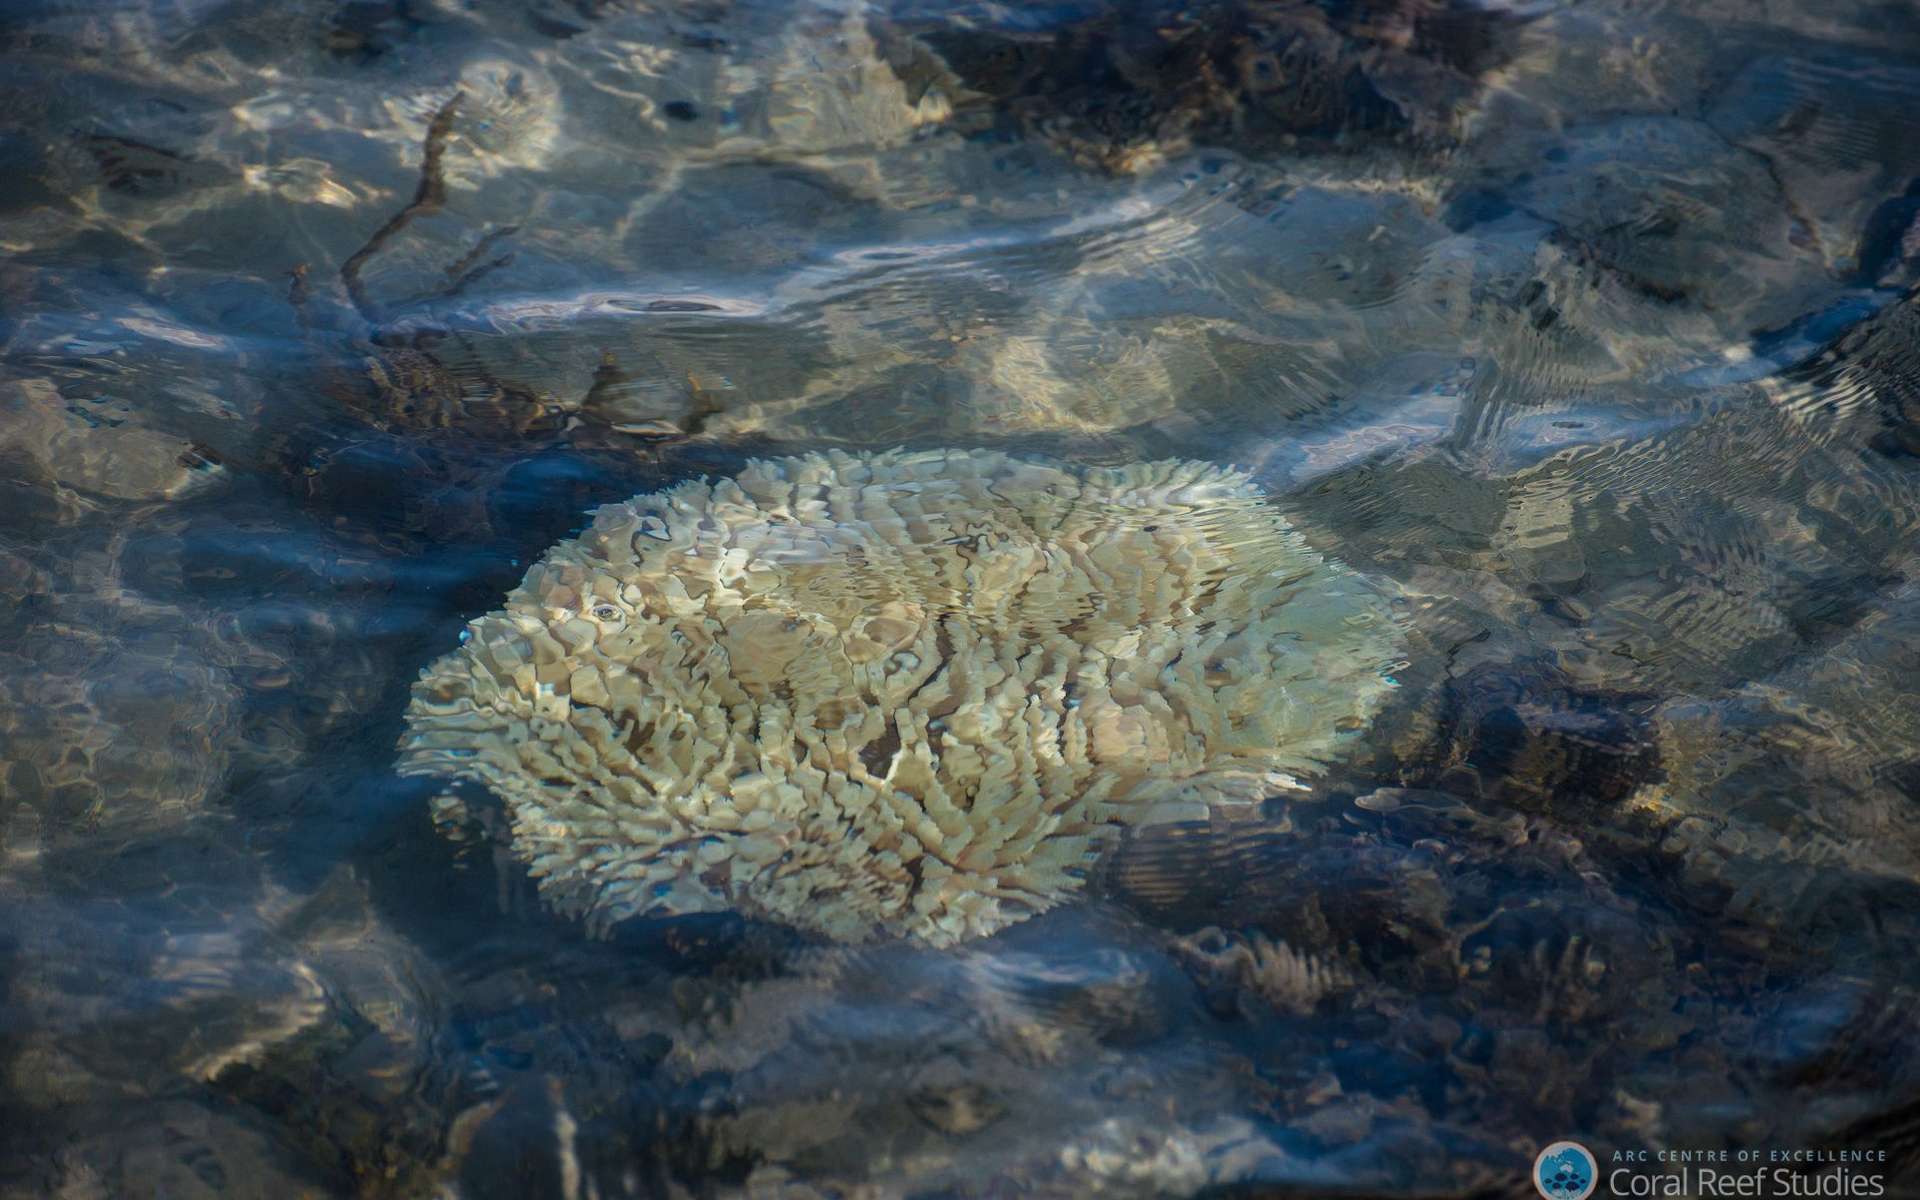 L'expédition Tara Pacific va parcourir 100.000 km et récoltera 40.000 échantillons lors d'une étude à l'échelle de l'océan Pacifique. Le but est de comprendre la biodiversité des récifs mais aussi les résistances et les faiblesses du corail, de plus en plus touché par le « blanchissement », quand le polype expulse son algue symbiotique. © Terry Hughes, ARC Centre of Excellence for Coral Reef Studies